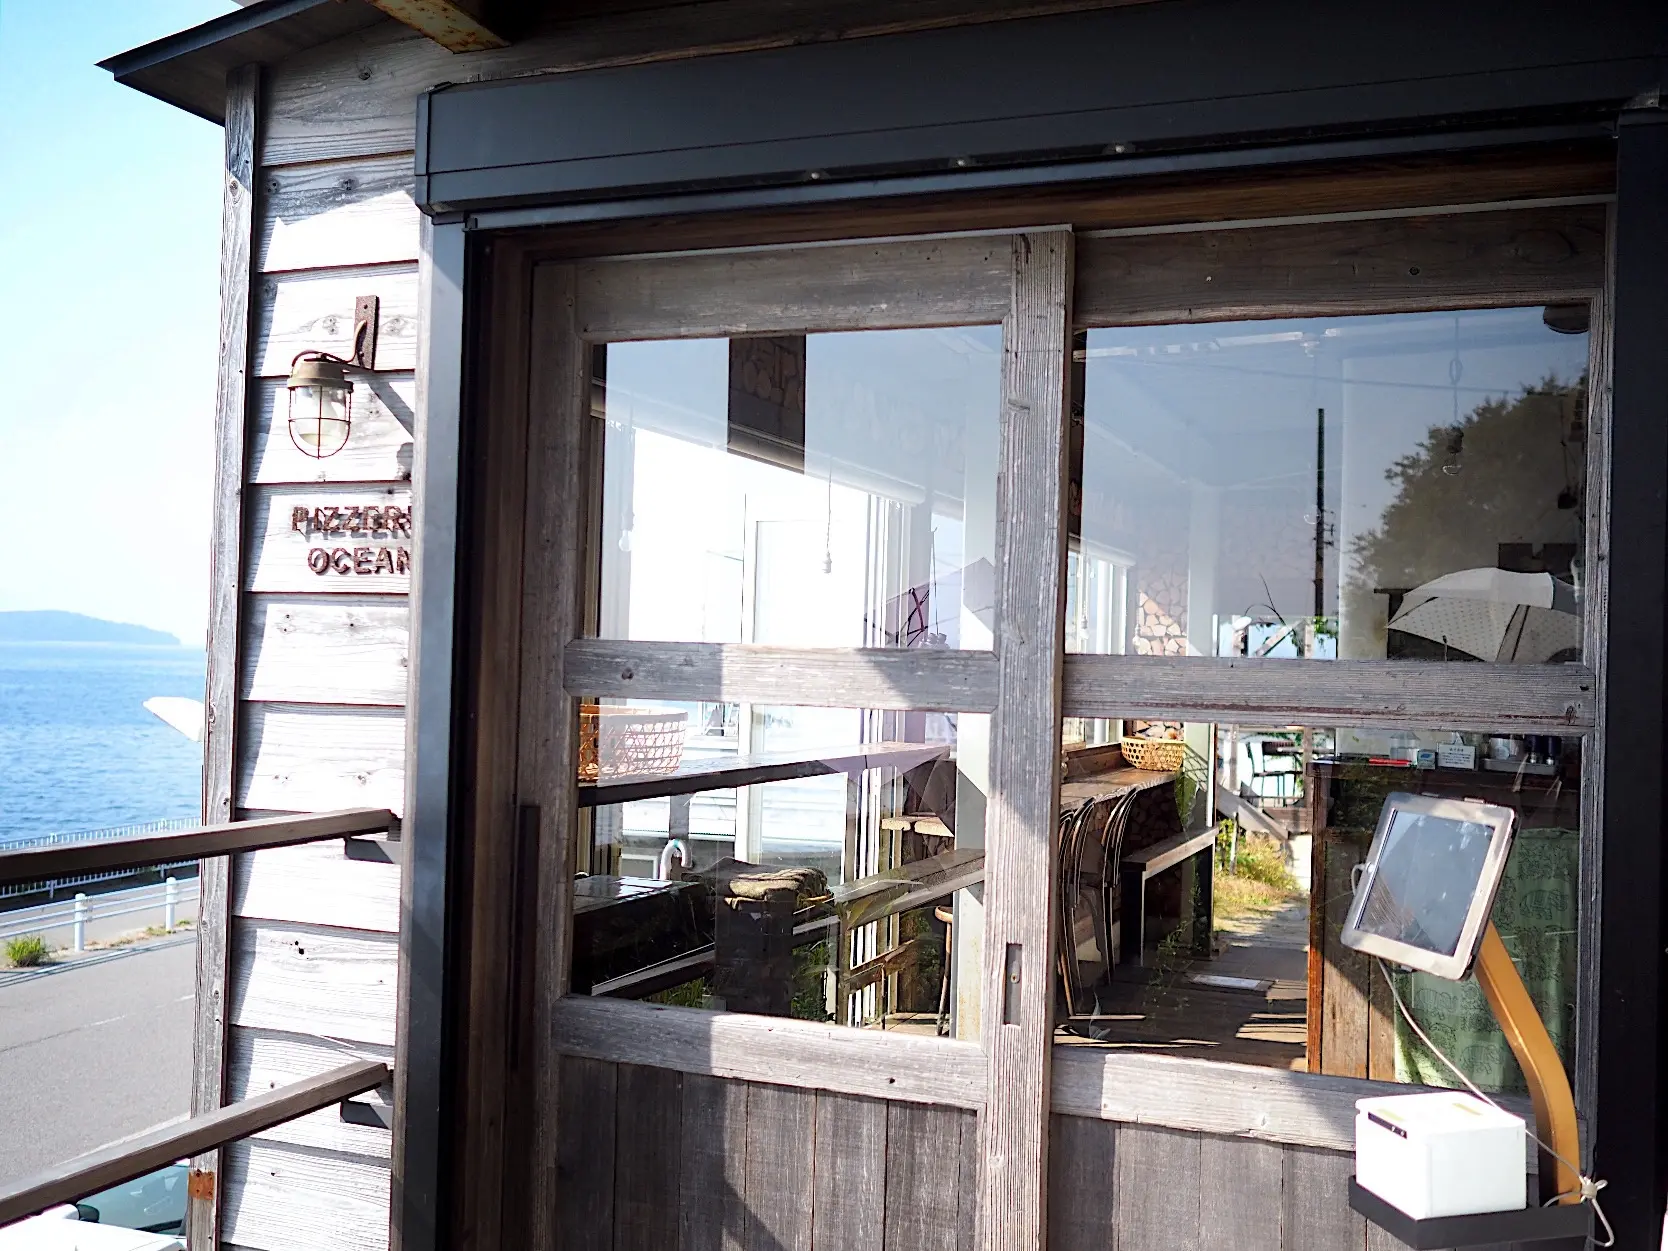 「ピッツェリア・オーシャン」西尾市寺部町、 寺部海水浴場沿いのお店です